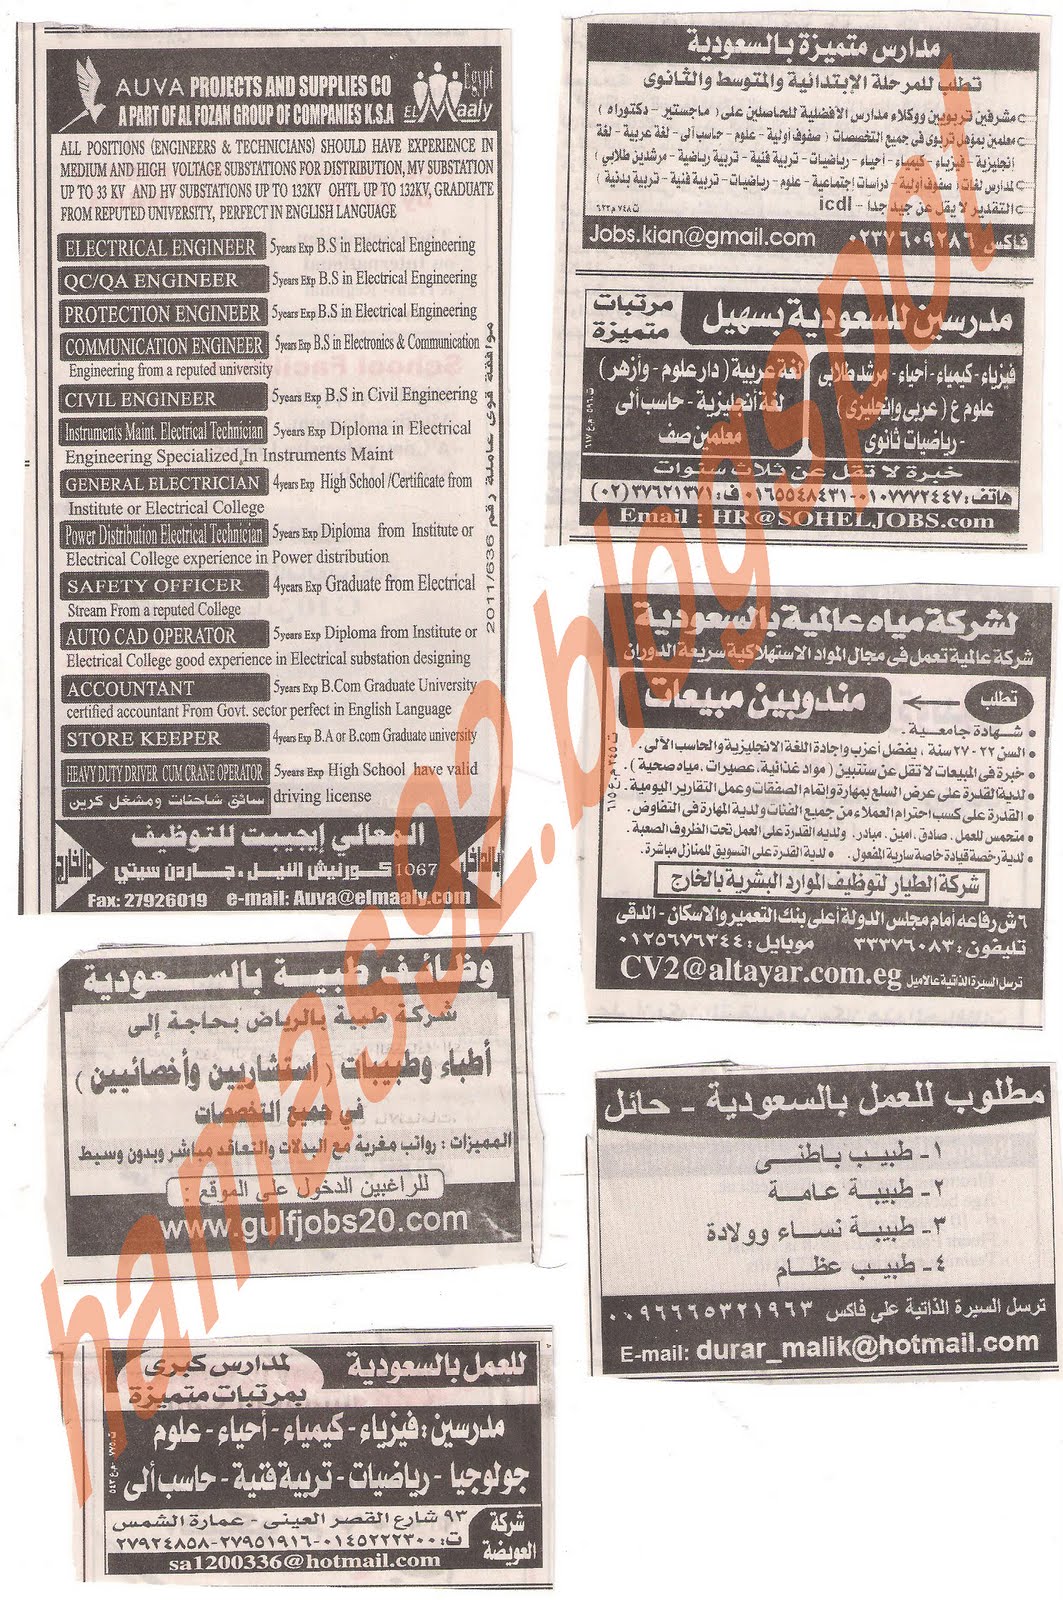 وظائف جريدة اهرام الجمعة 8 يوليو 2011 Picture+011